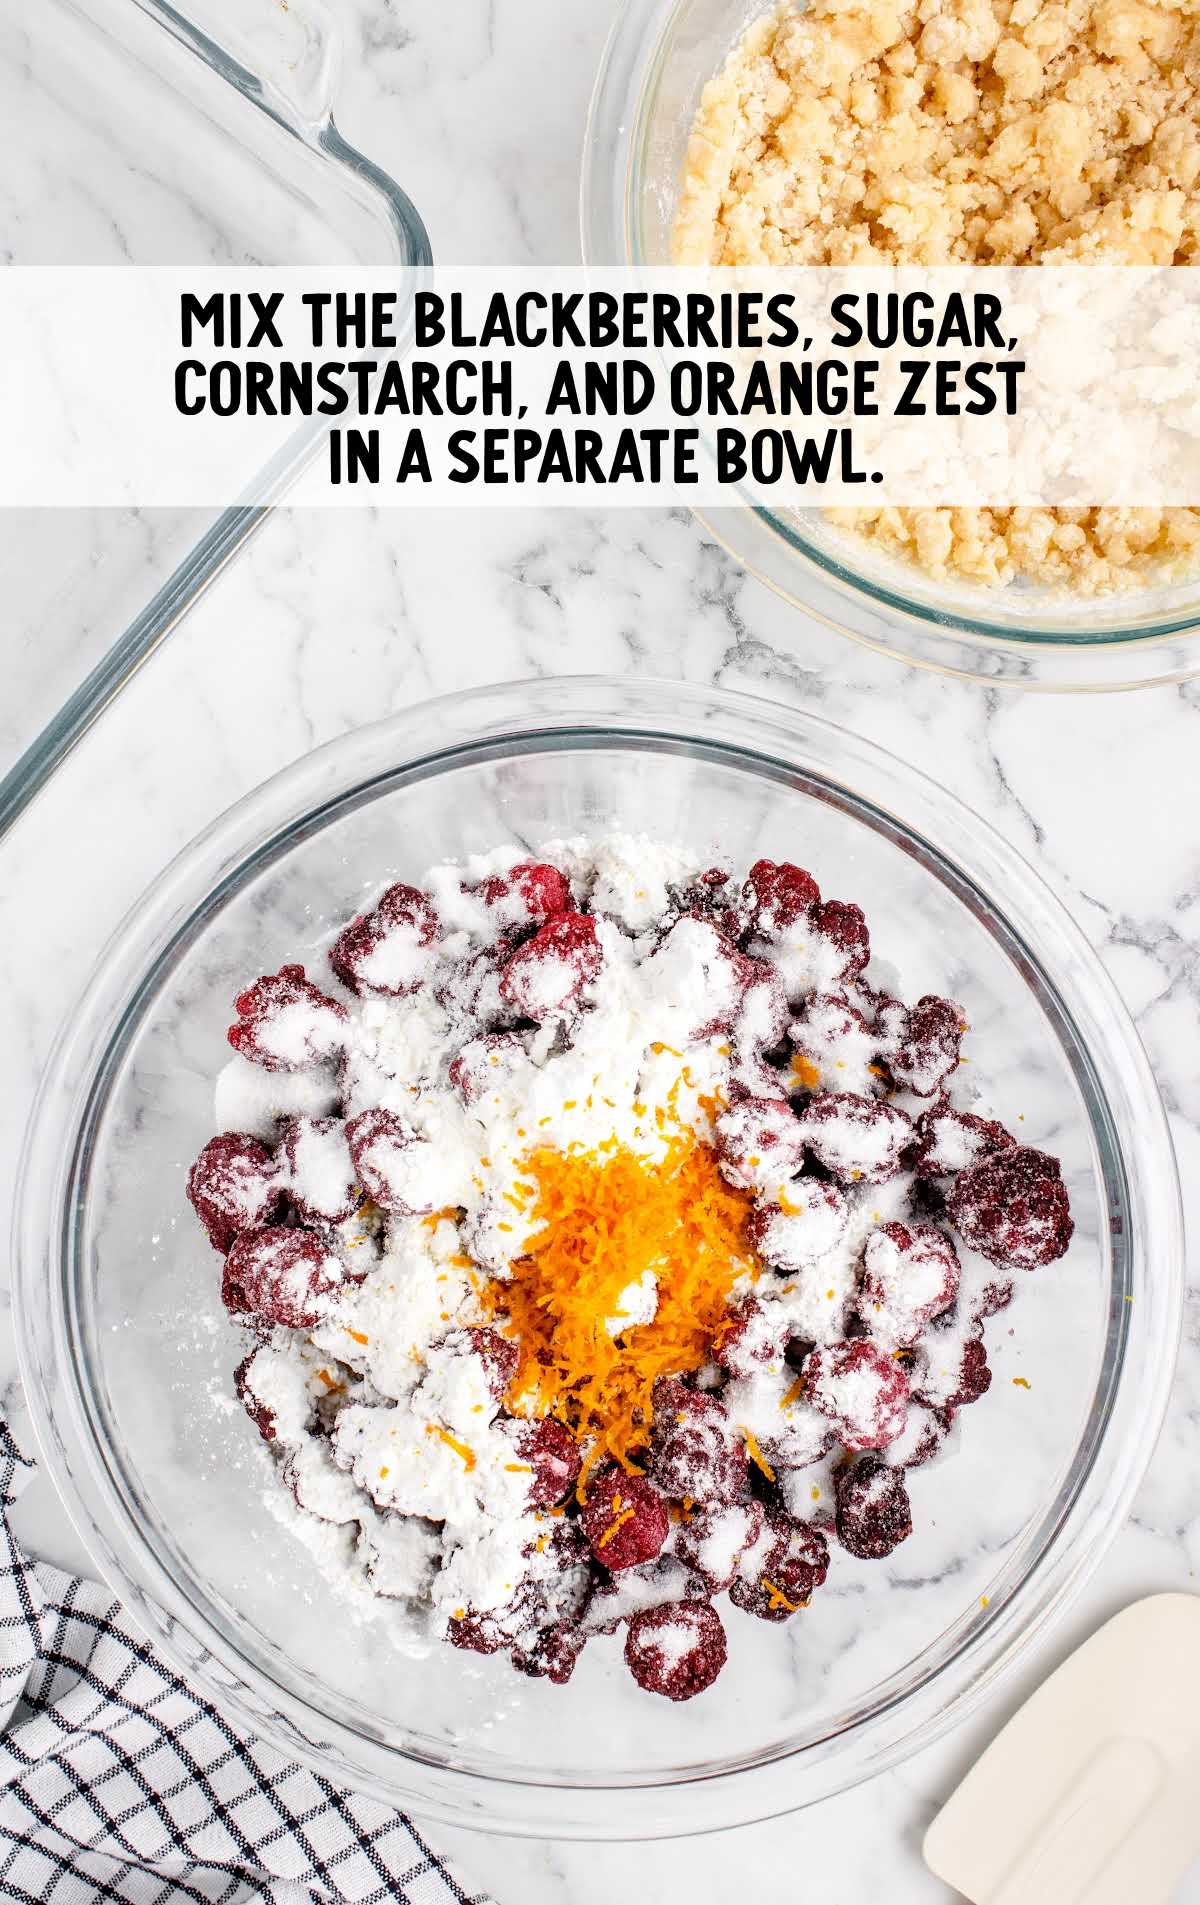 blackberries, sugar, cornstarch, and orange zest combined in a bowl